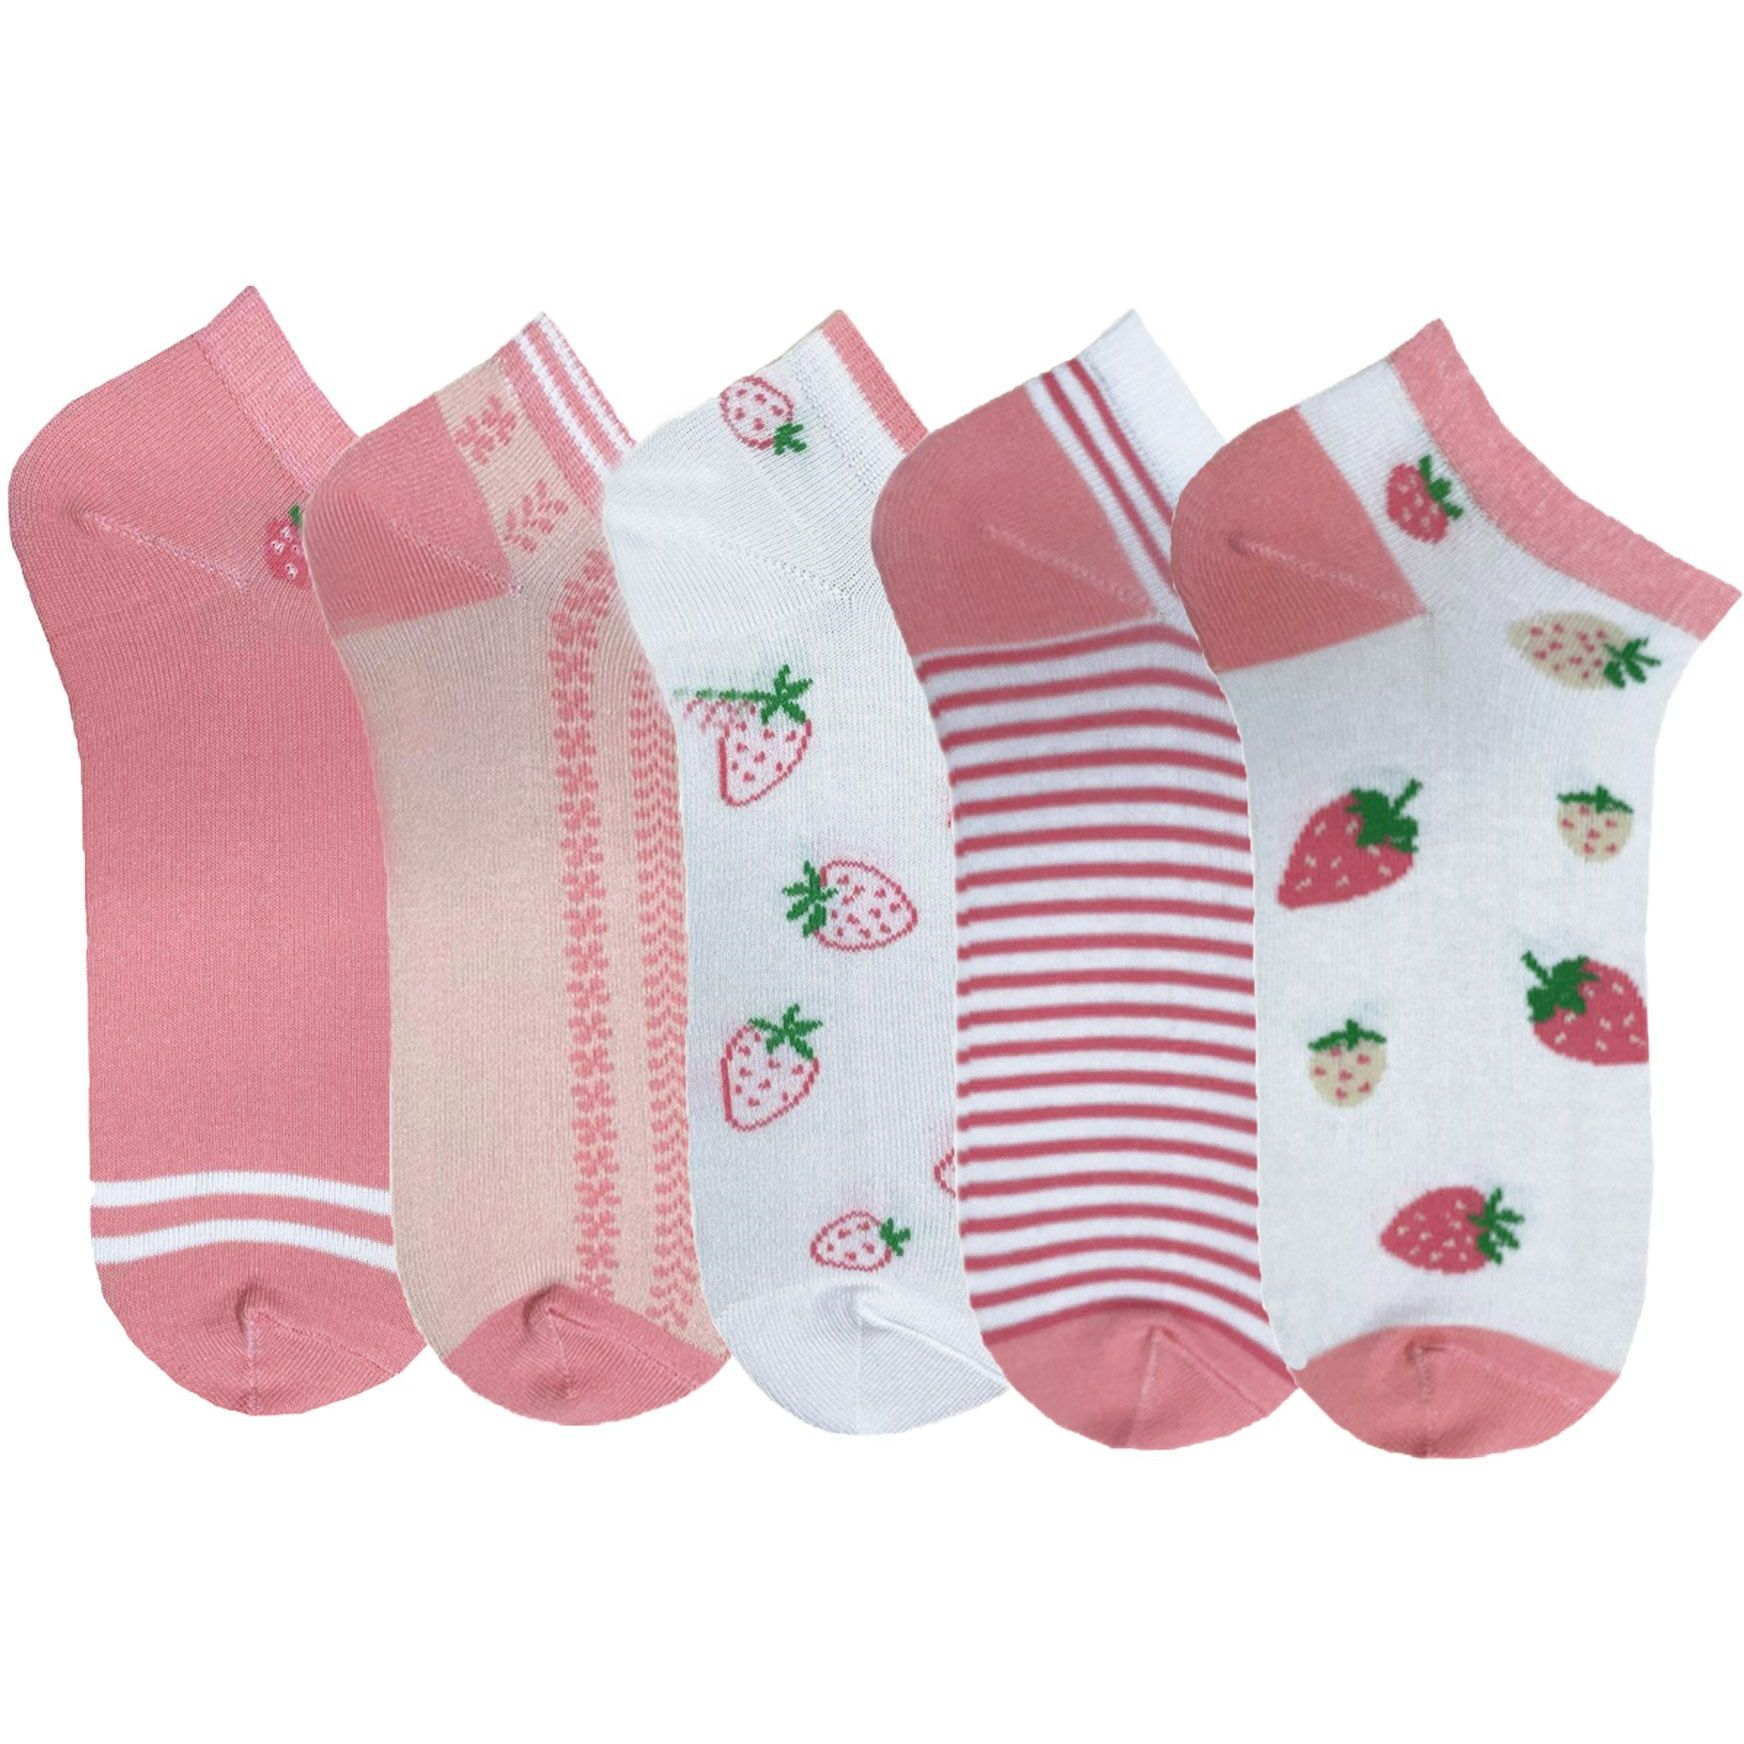 Набор носков женских Premier Socks 36-40 5 пар розовые с принтом (4820163319360) фото 1